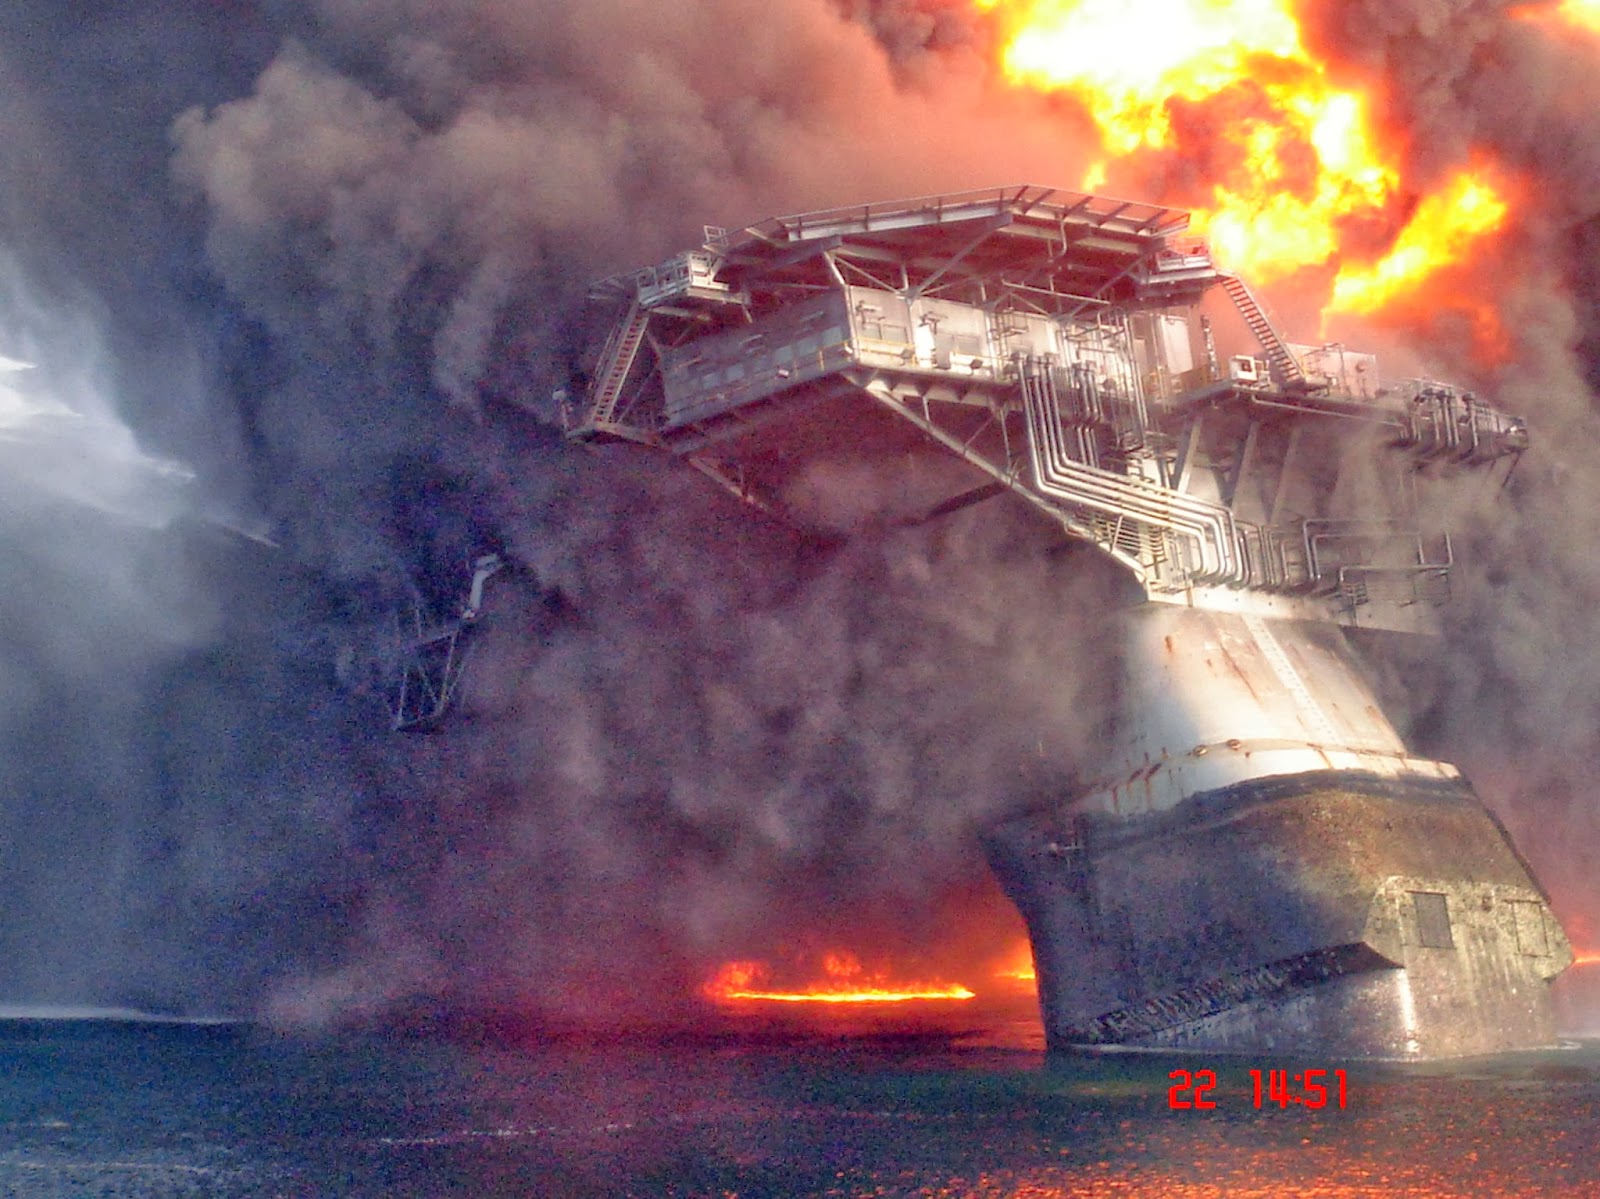 Какая была последняя катастрофа. Взрыв на нефтяной платформе в мексиканском заливе 2010. Взрыв платформы Deepwater Horizon. Взрыв нефтяной платформы Deepwater Horizon в мексиканском заливе 2010. Взрыв нефтяной платформы Deepwater Horizon - 20 апреля 2010 года.